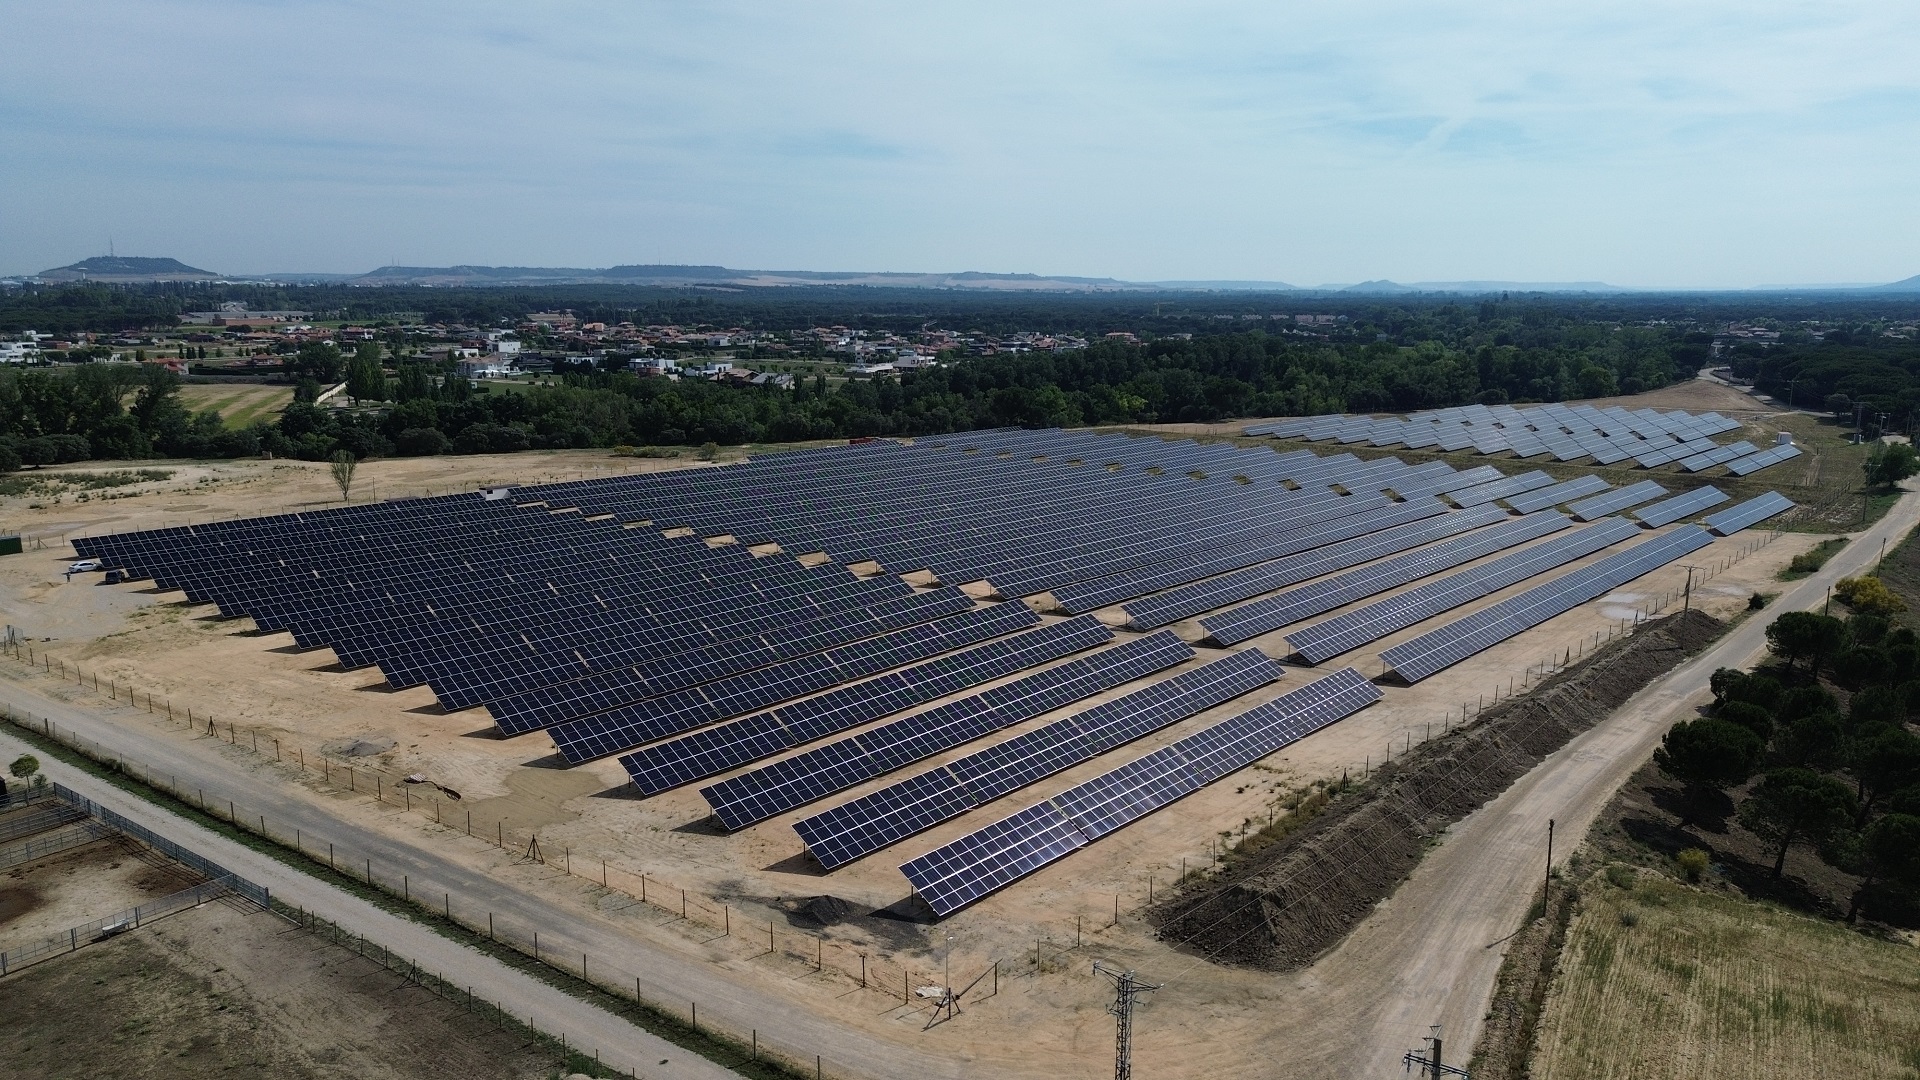 Instalaciones solares fotovoltaicas conectadas a red de 3,569 MWp y 0,6 MWp en Boecillo (Valladolid)